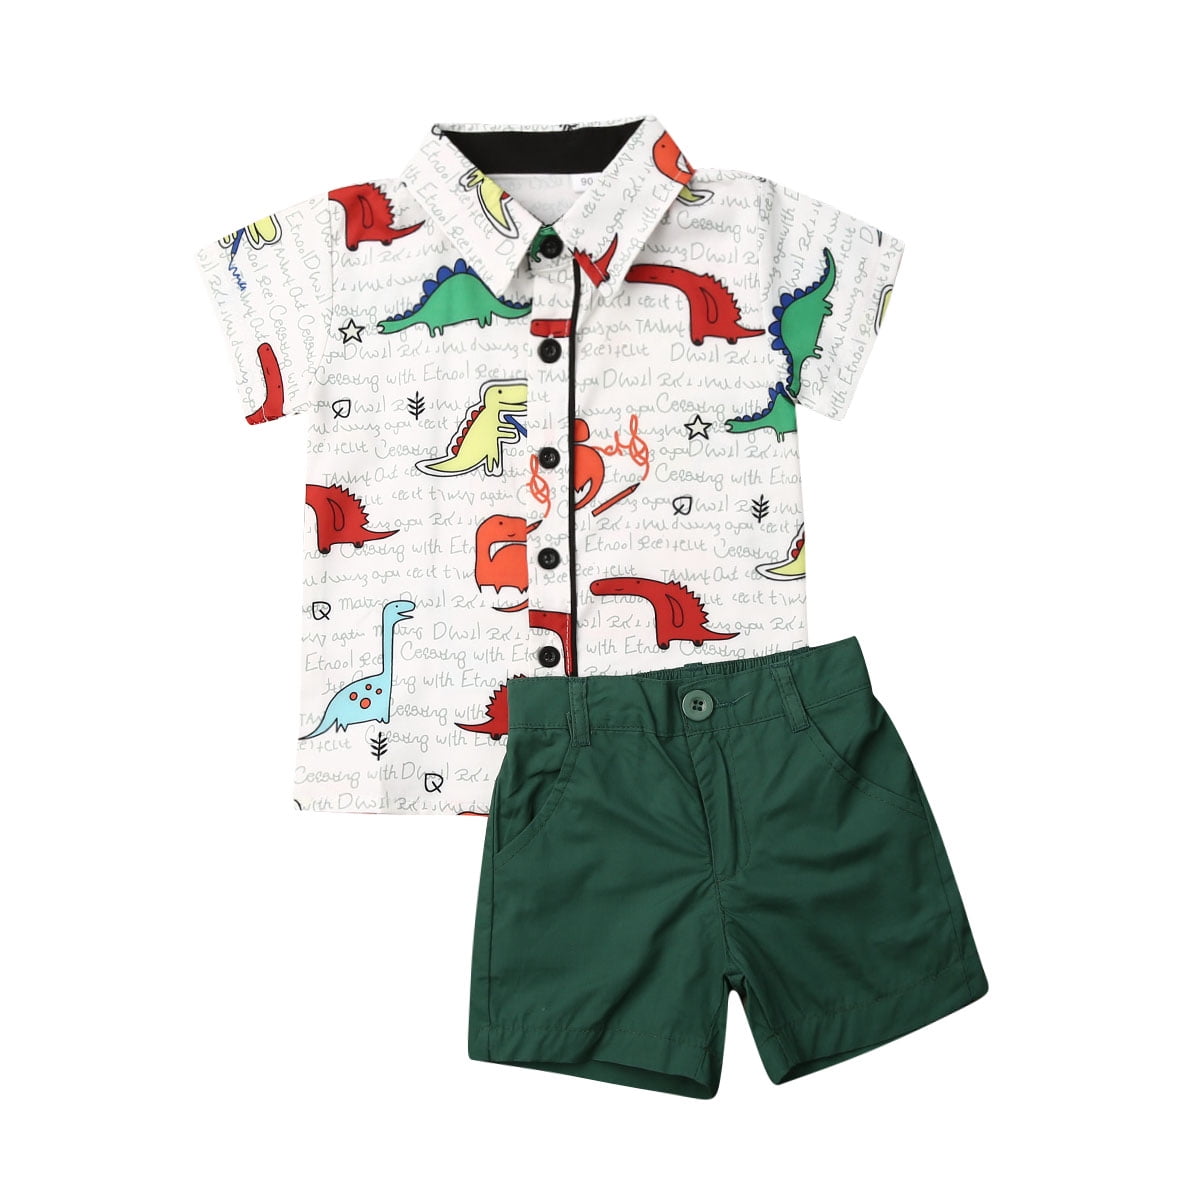 Fruitsunchen Little Boys 2 Pcs Short Sets Cotton Dinosaur T-Shirt & Shorts Outfit Set 